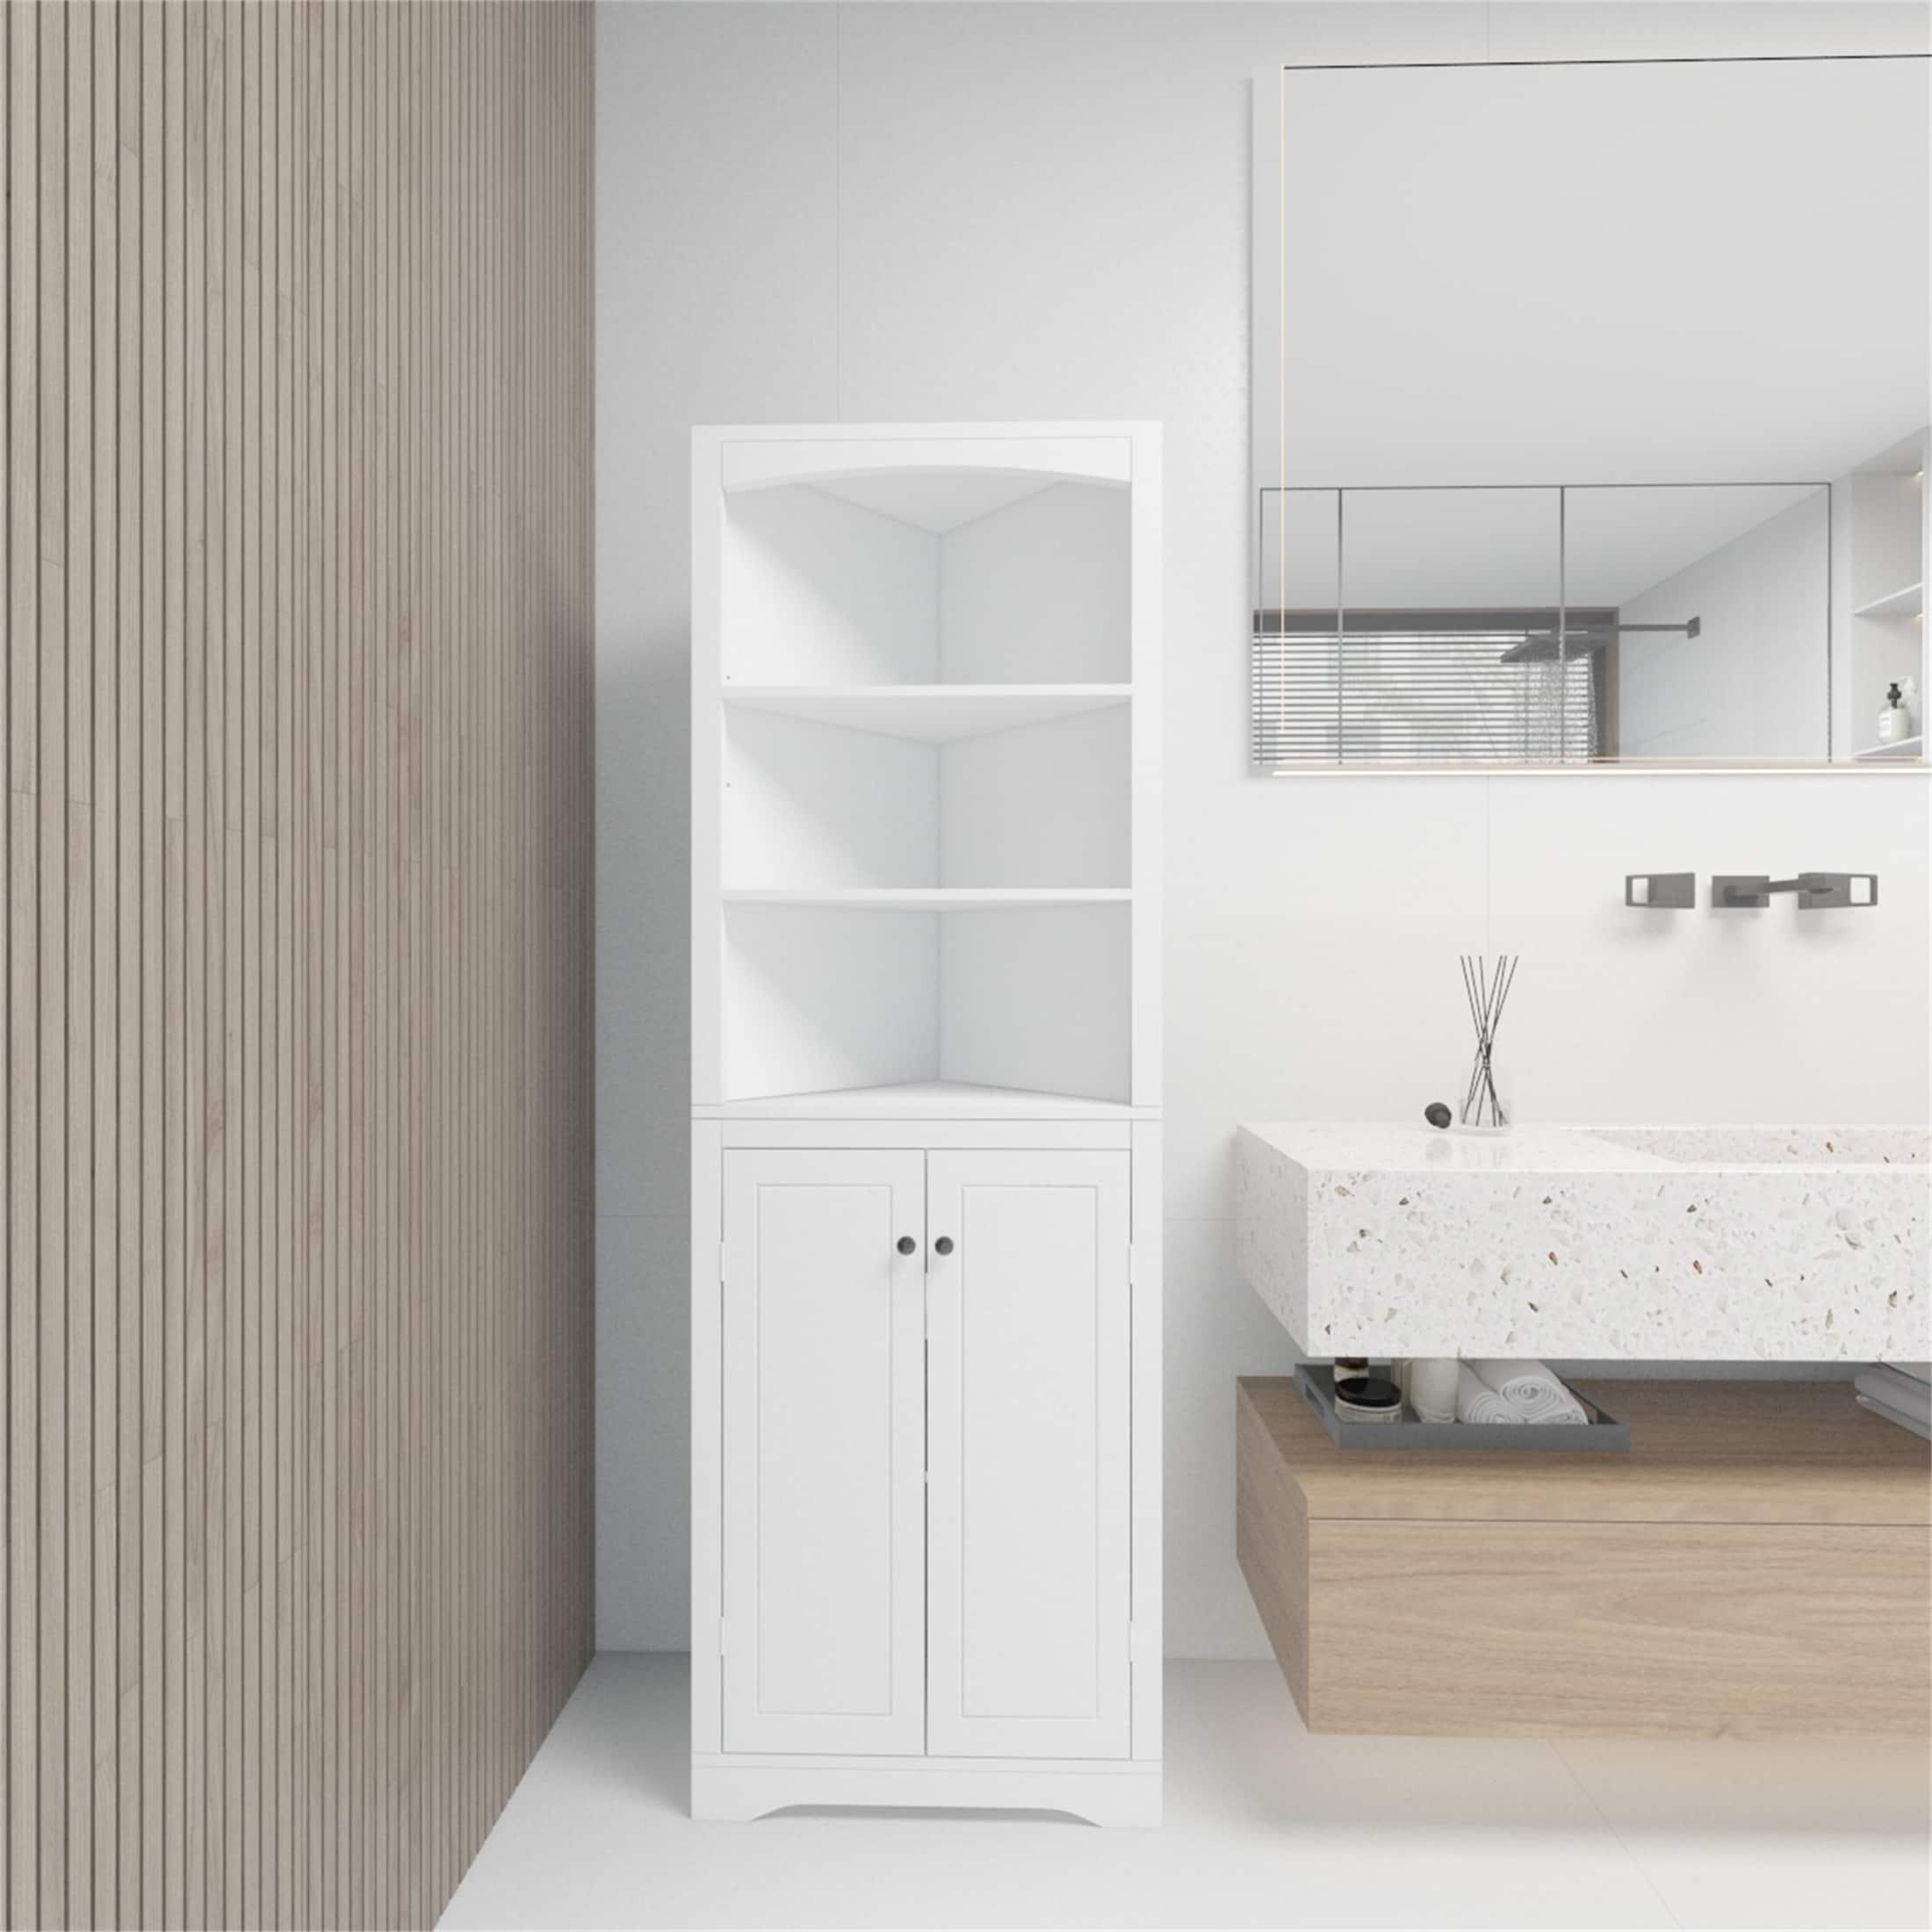 Bathroom Storage Corner Cabinet with Adjustable Shelves